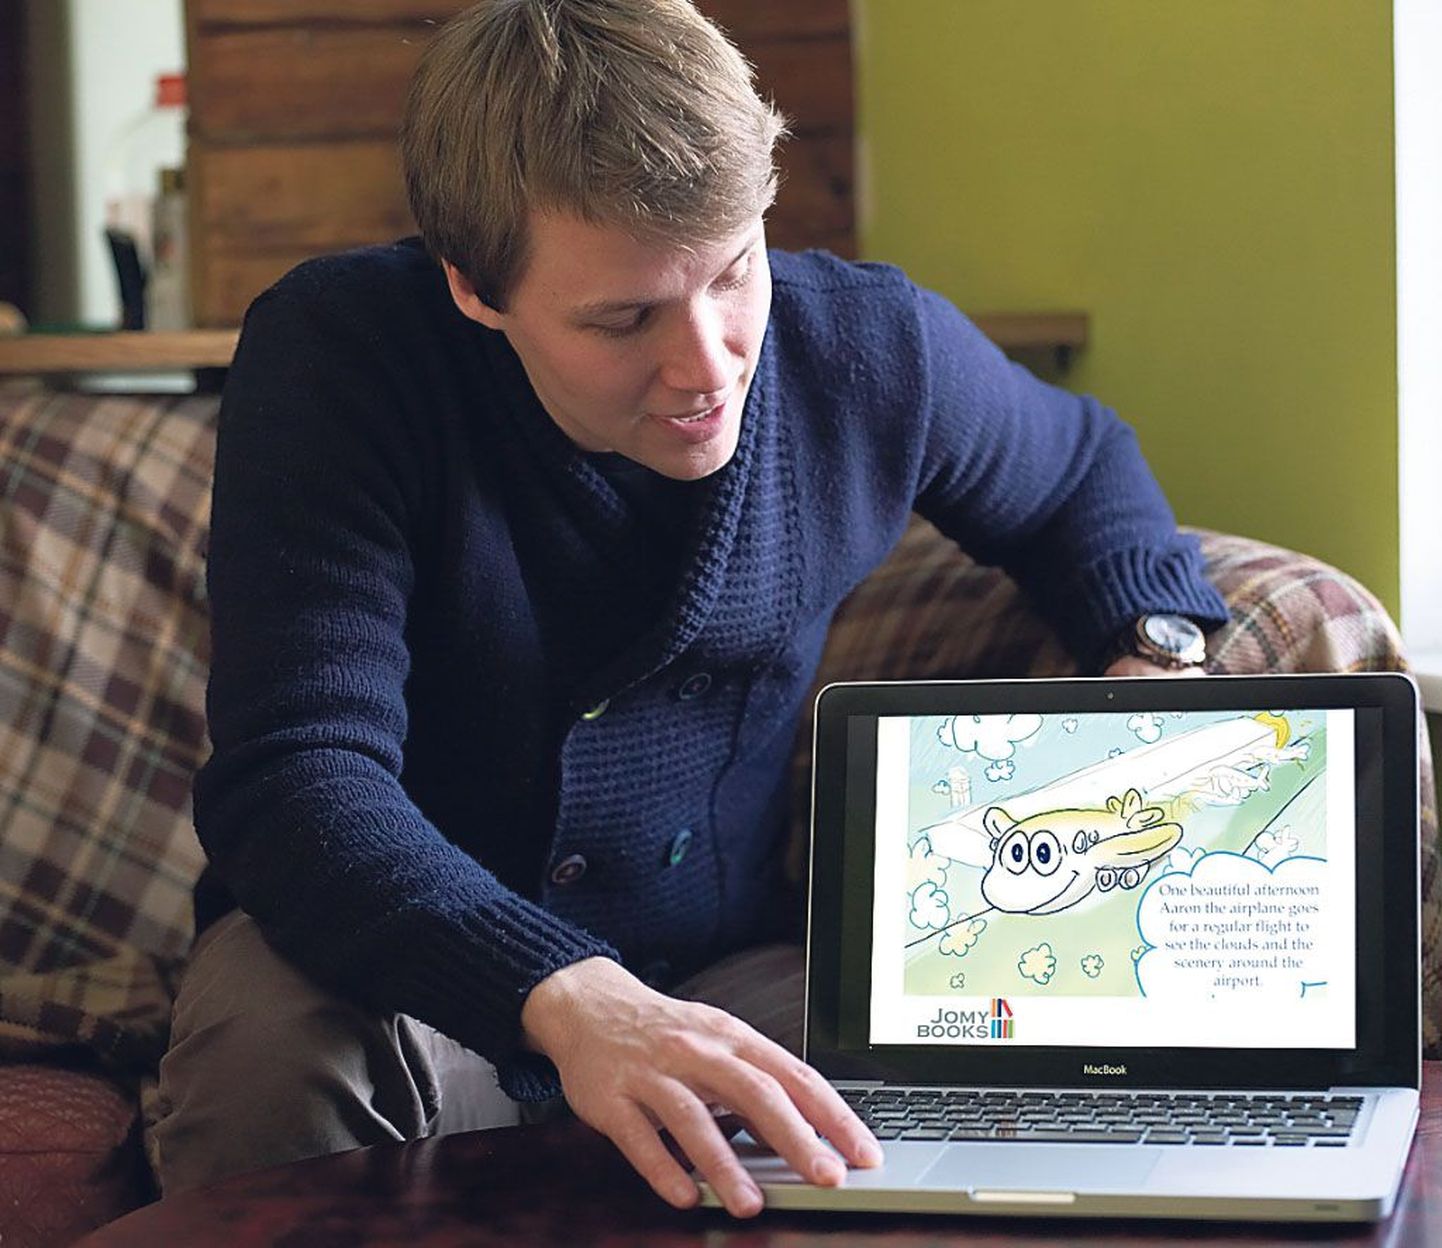 Pärnust pärit Taavi Lindmaa ja tema tiim jõudis ettevõtluskonkursil “Ajujaht 2012” 20 parema hulka veebikeskkonnaga JomyBooks, kus igaüks saab lasteraamatusse jutte kirjutada või tekste illustreerida.